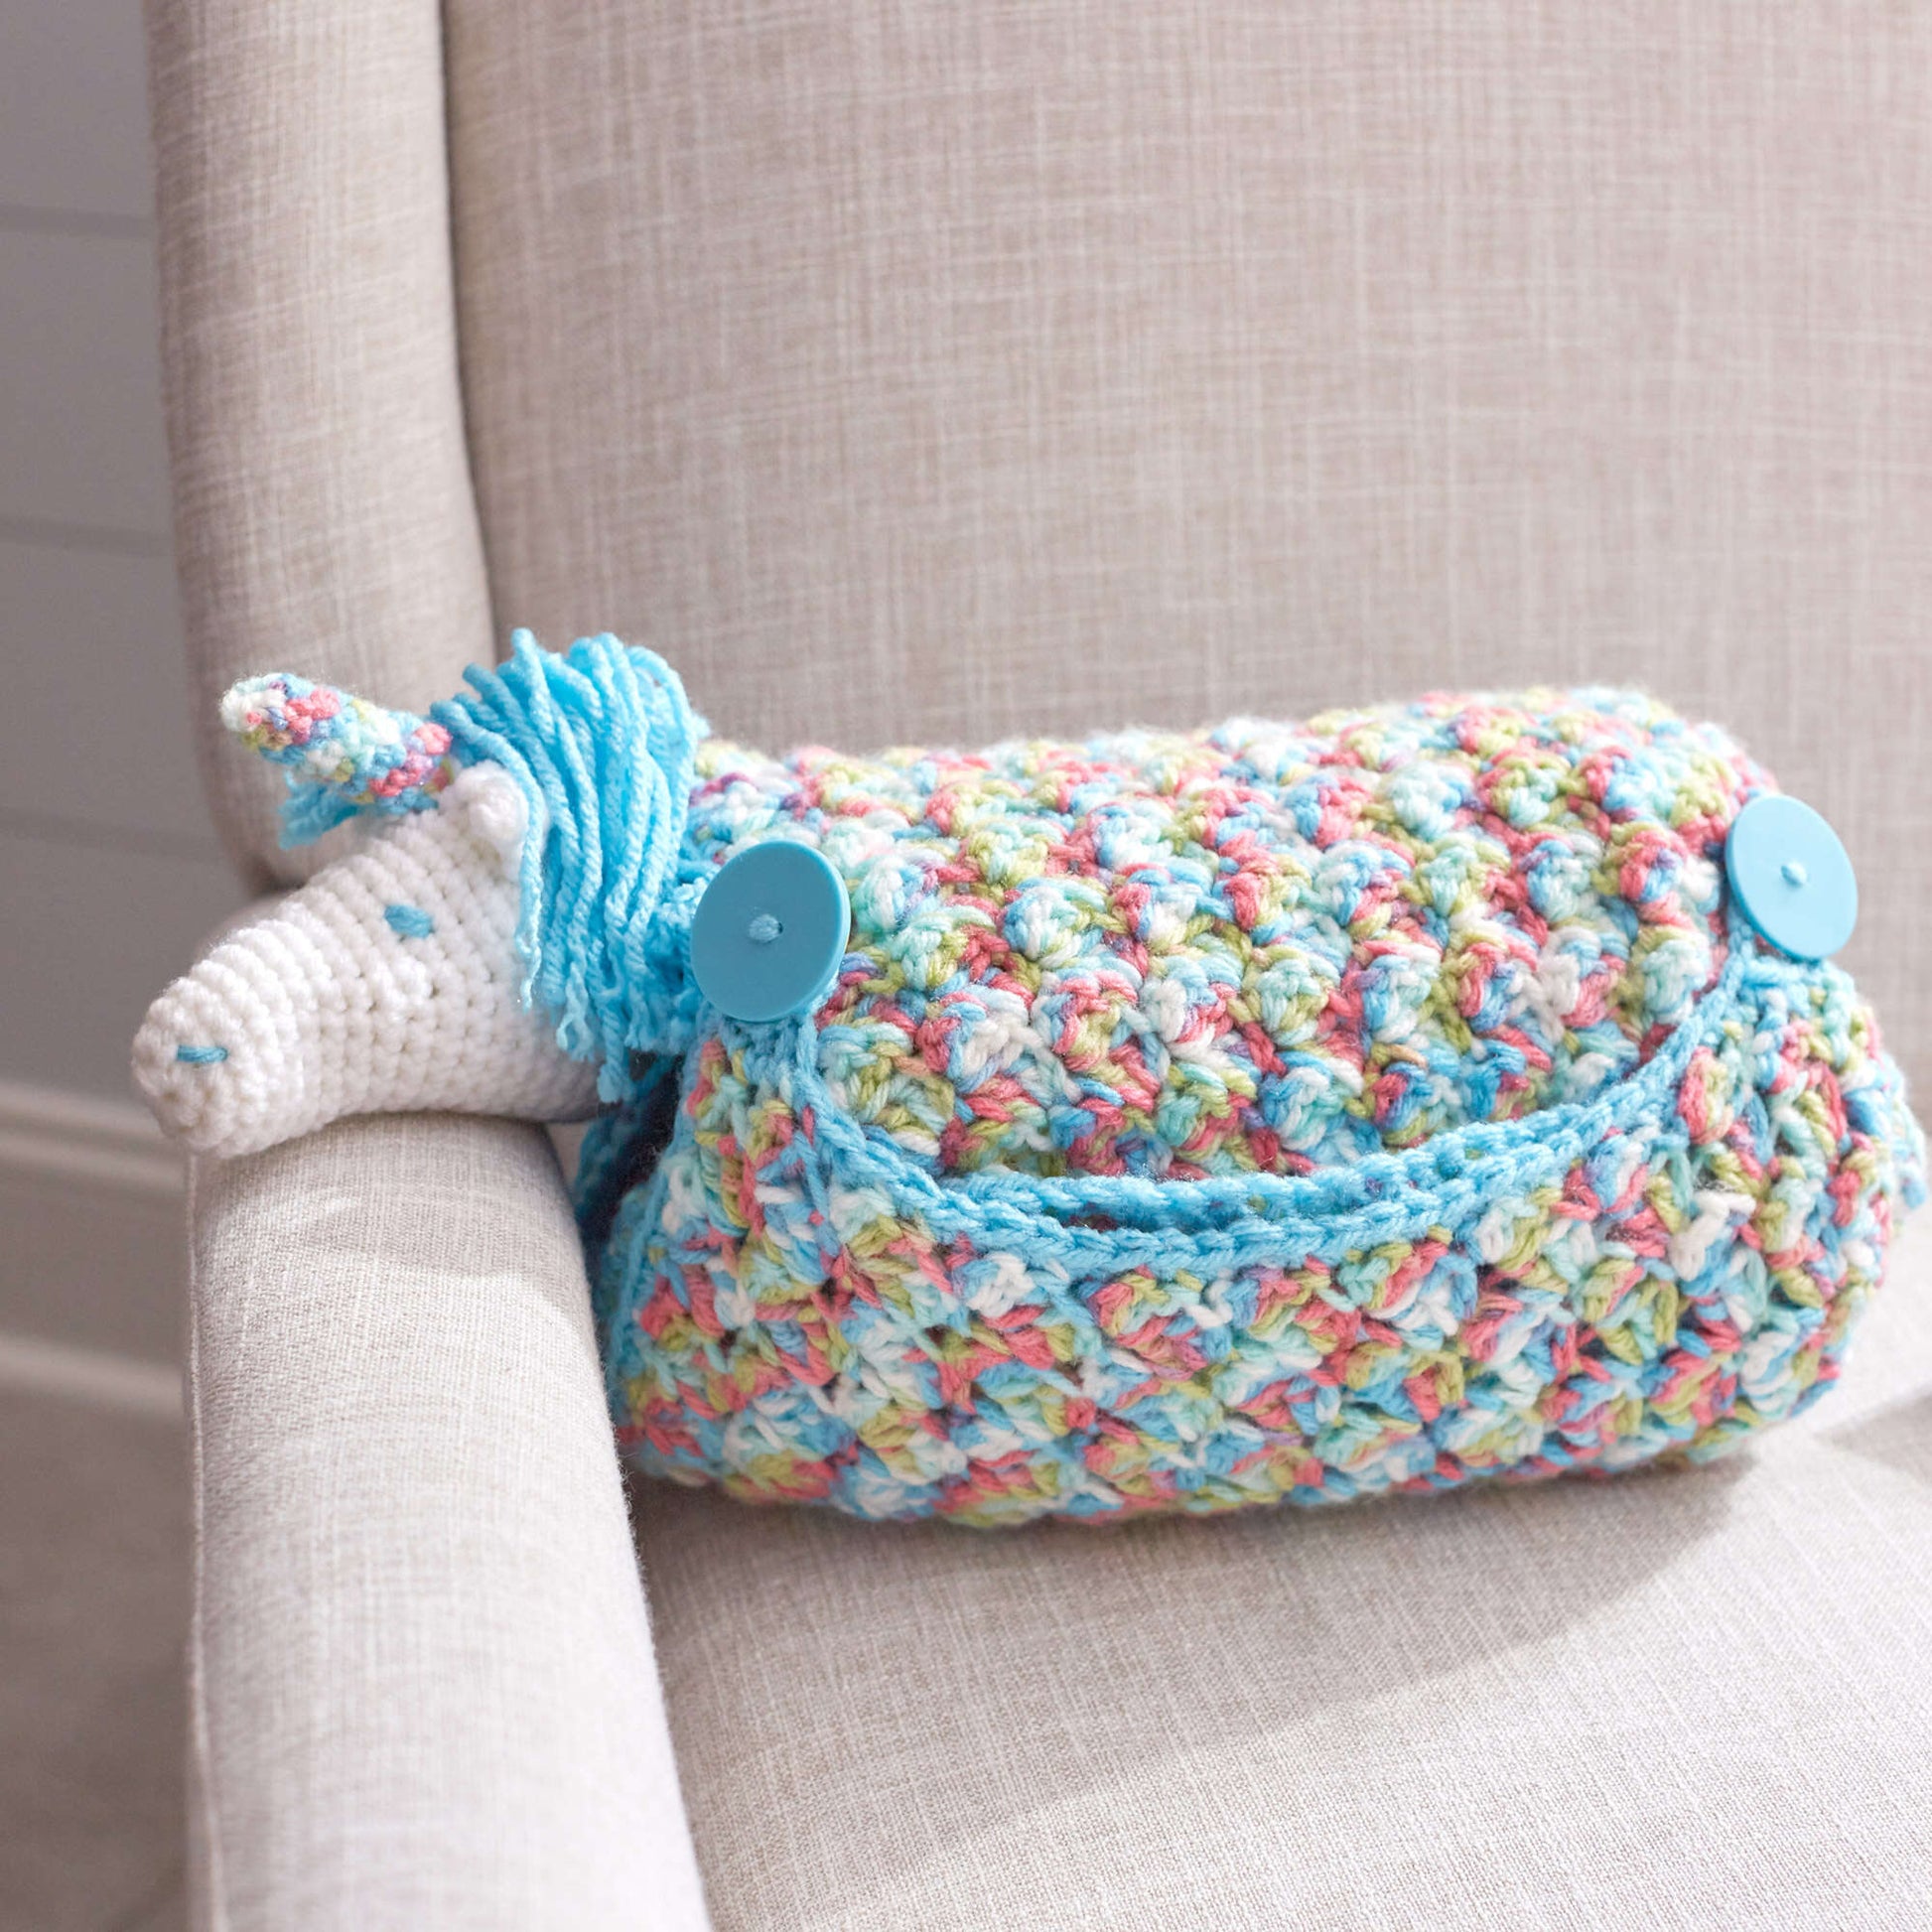 Free Red Heart Unicorn Crochet Baby Blanket Pattern